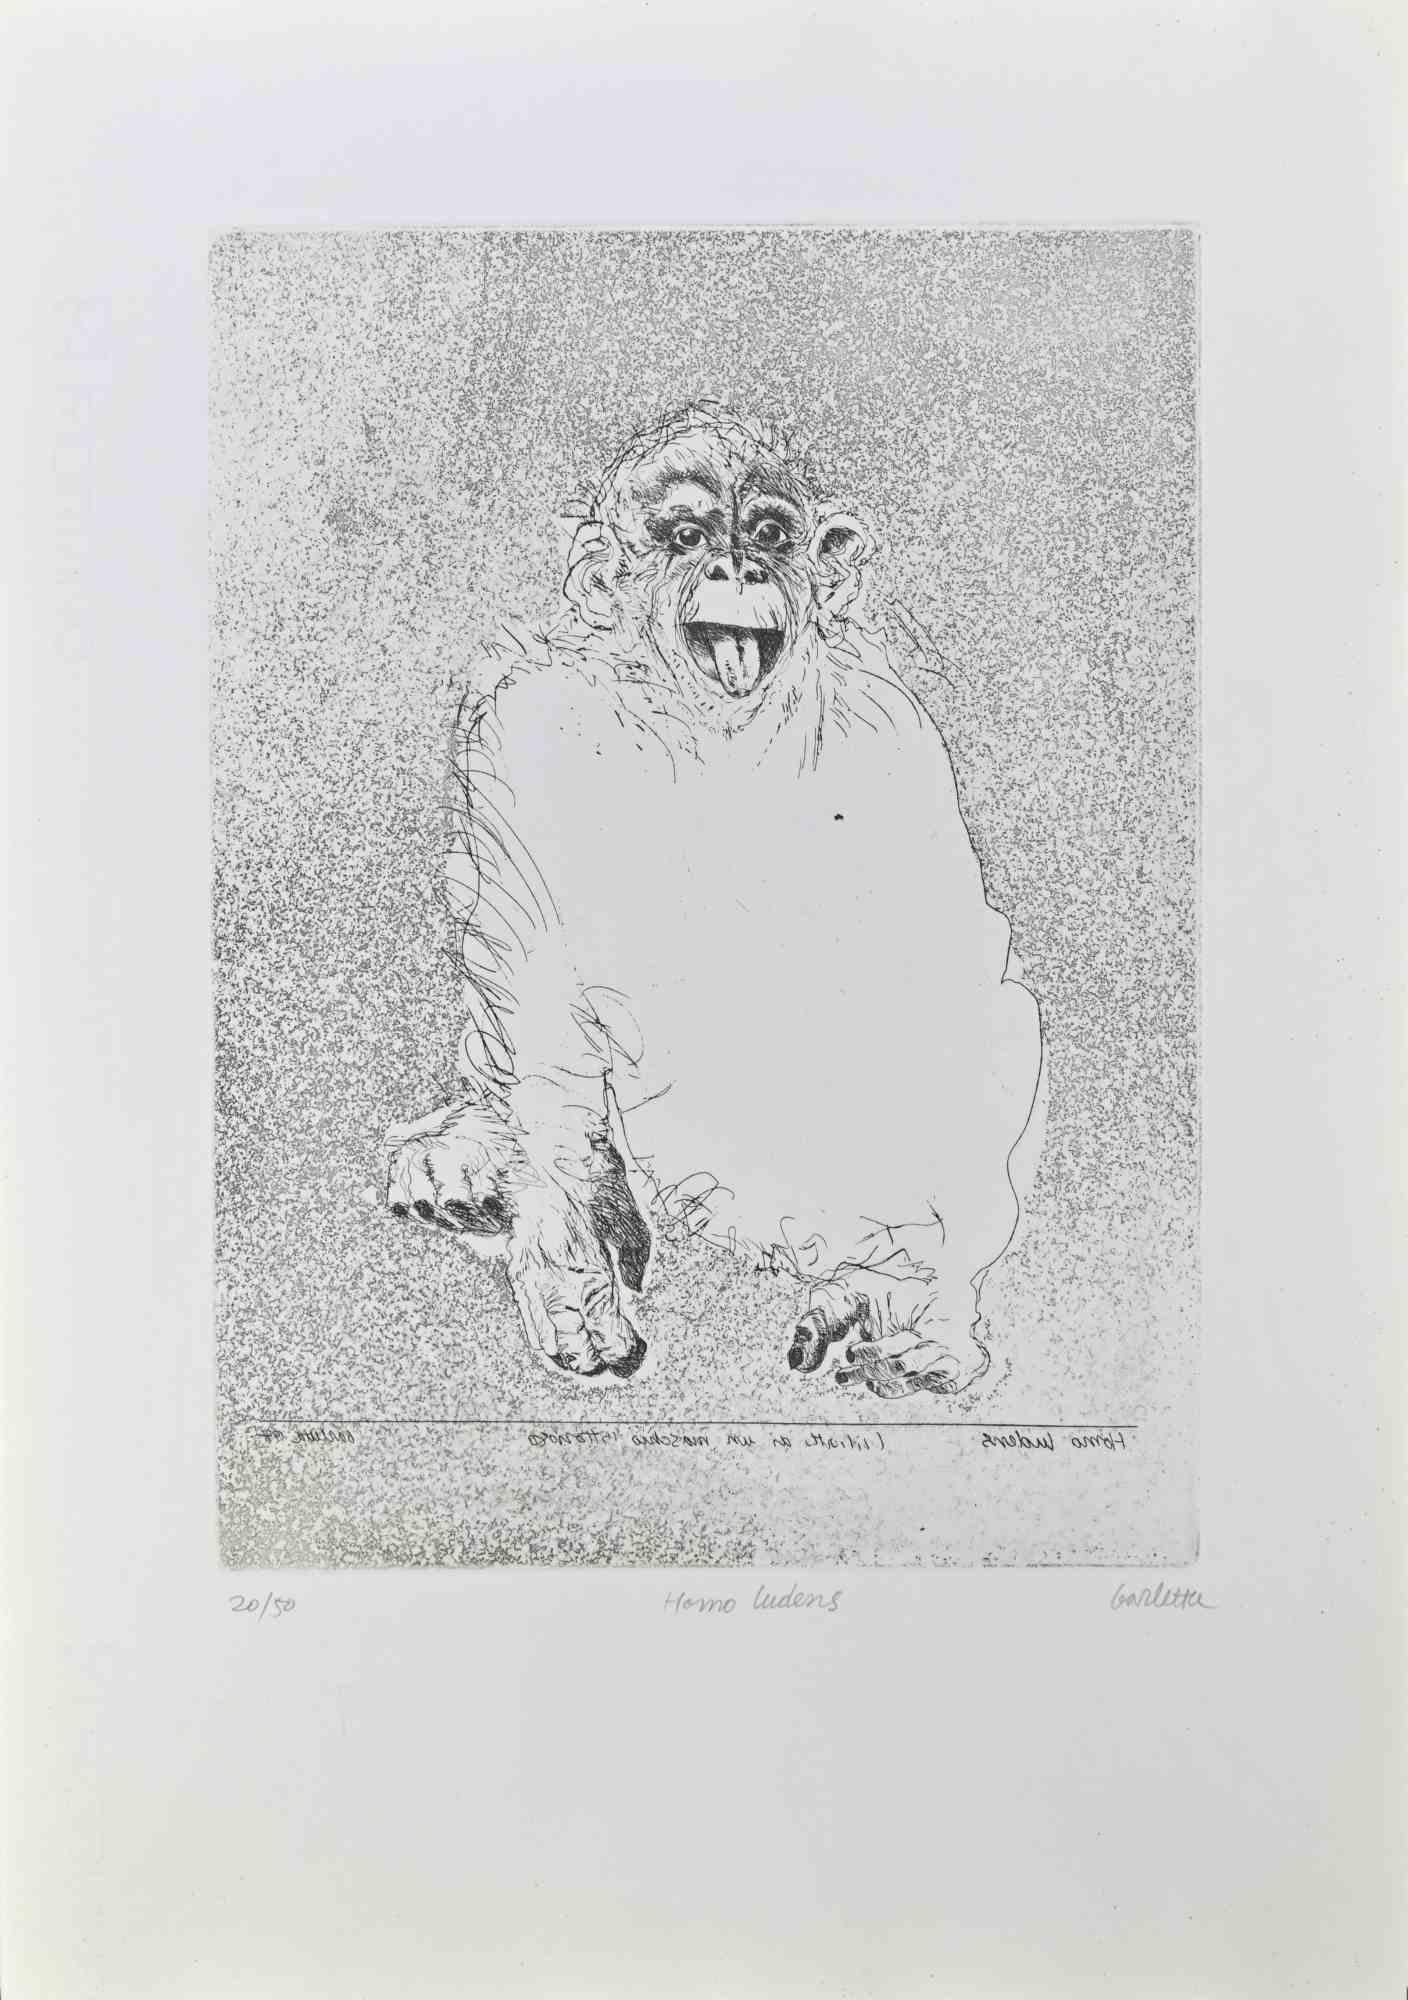 Homo Ludens  est une gravure réalisée par Sergio Barletta en 1991.

Signé à la main  en bas à droite au crayon, et titré en bas au centre "Homo Ludens". Numéroté en bas à gauche, de l'édition de 50 tirages.

Bonnes conditions.

Sergio Barletta